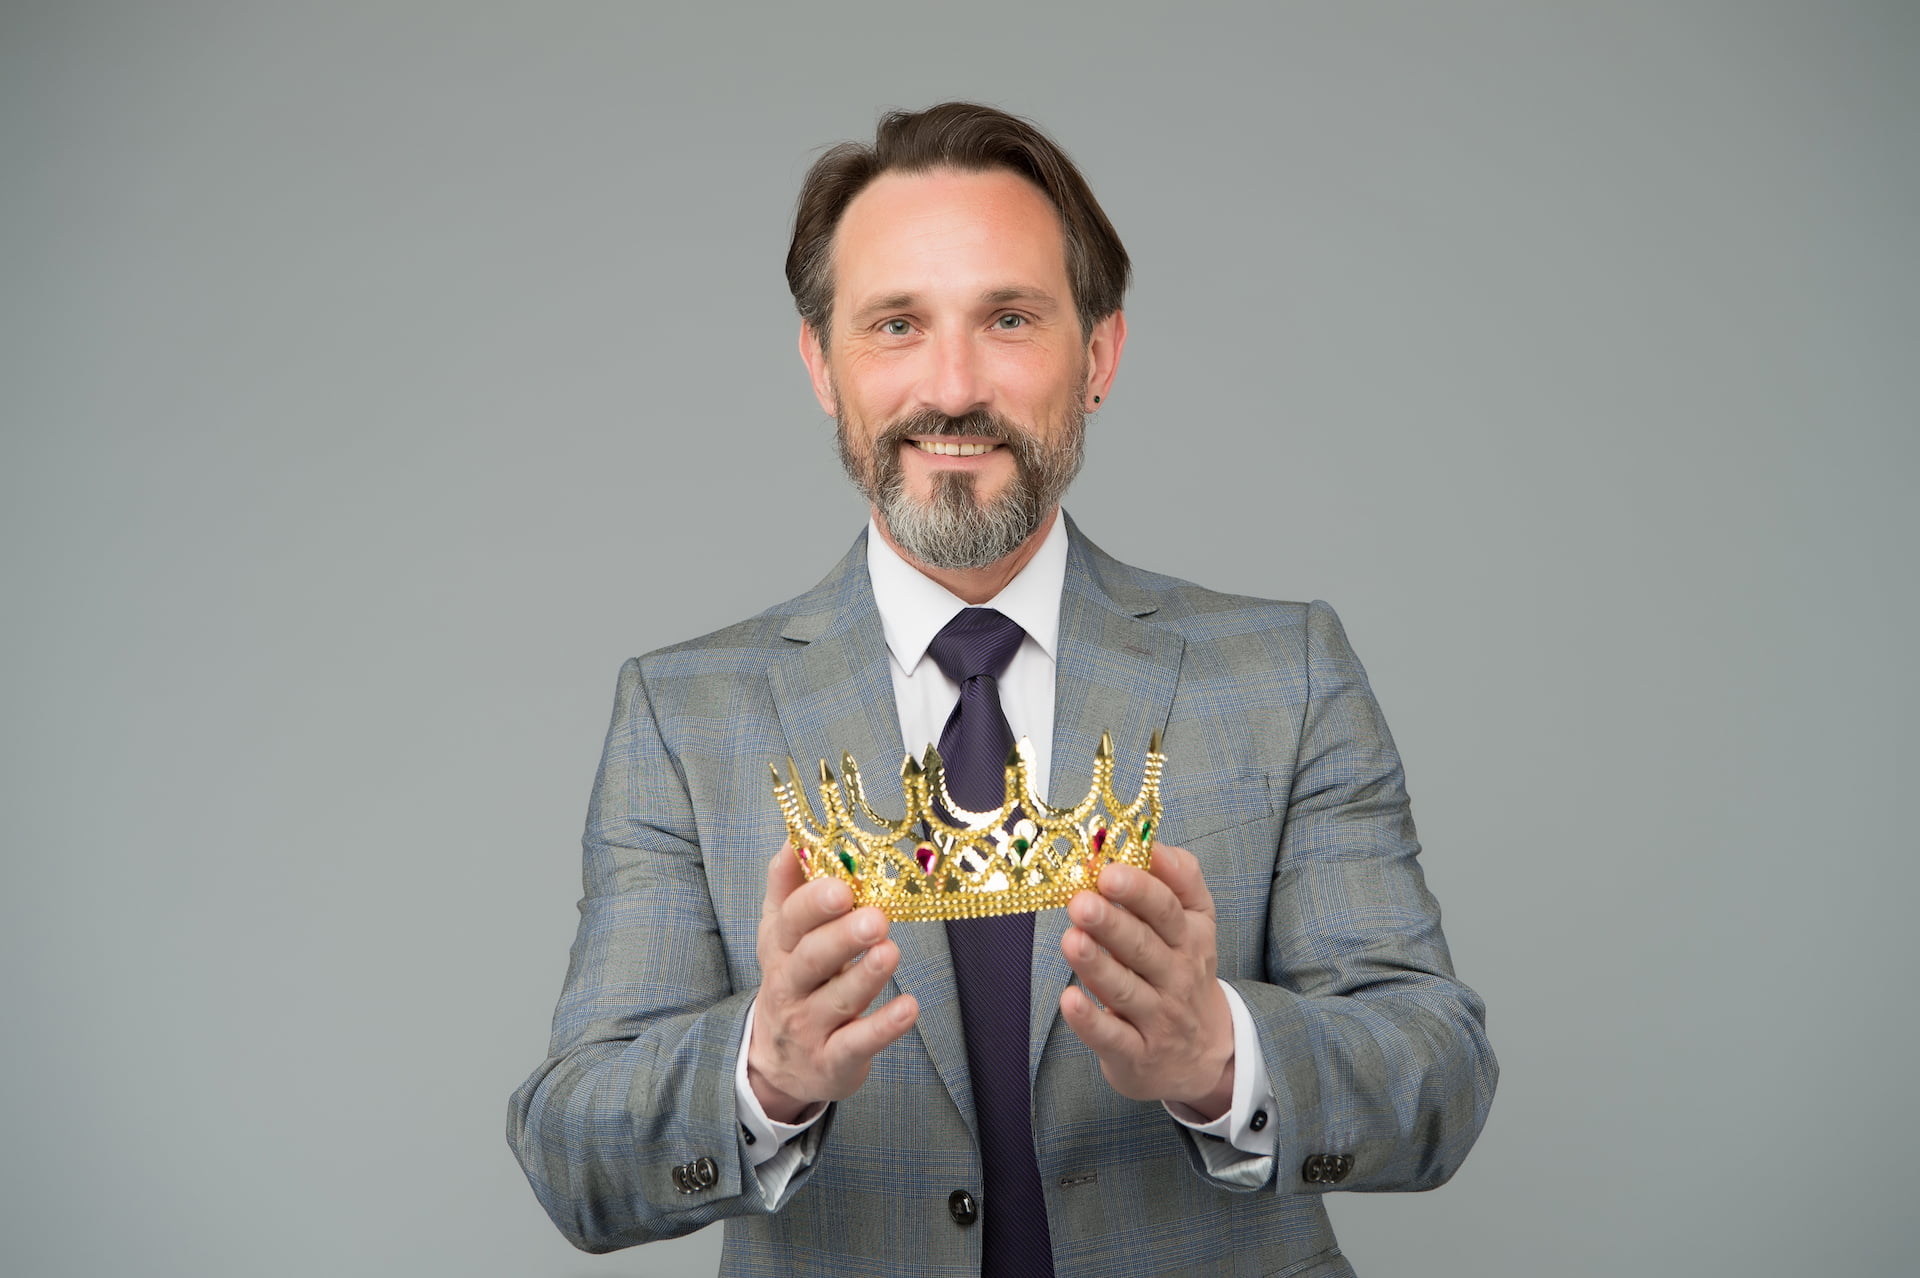 Lachender Mann mit einer Krone in der Hand vor grauem Hintergrund.